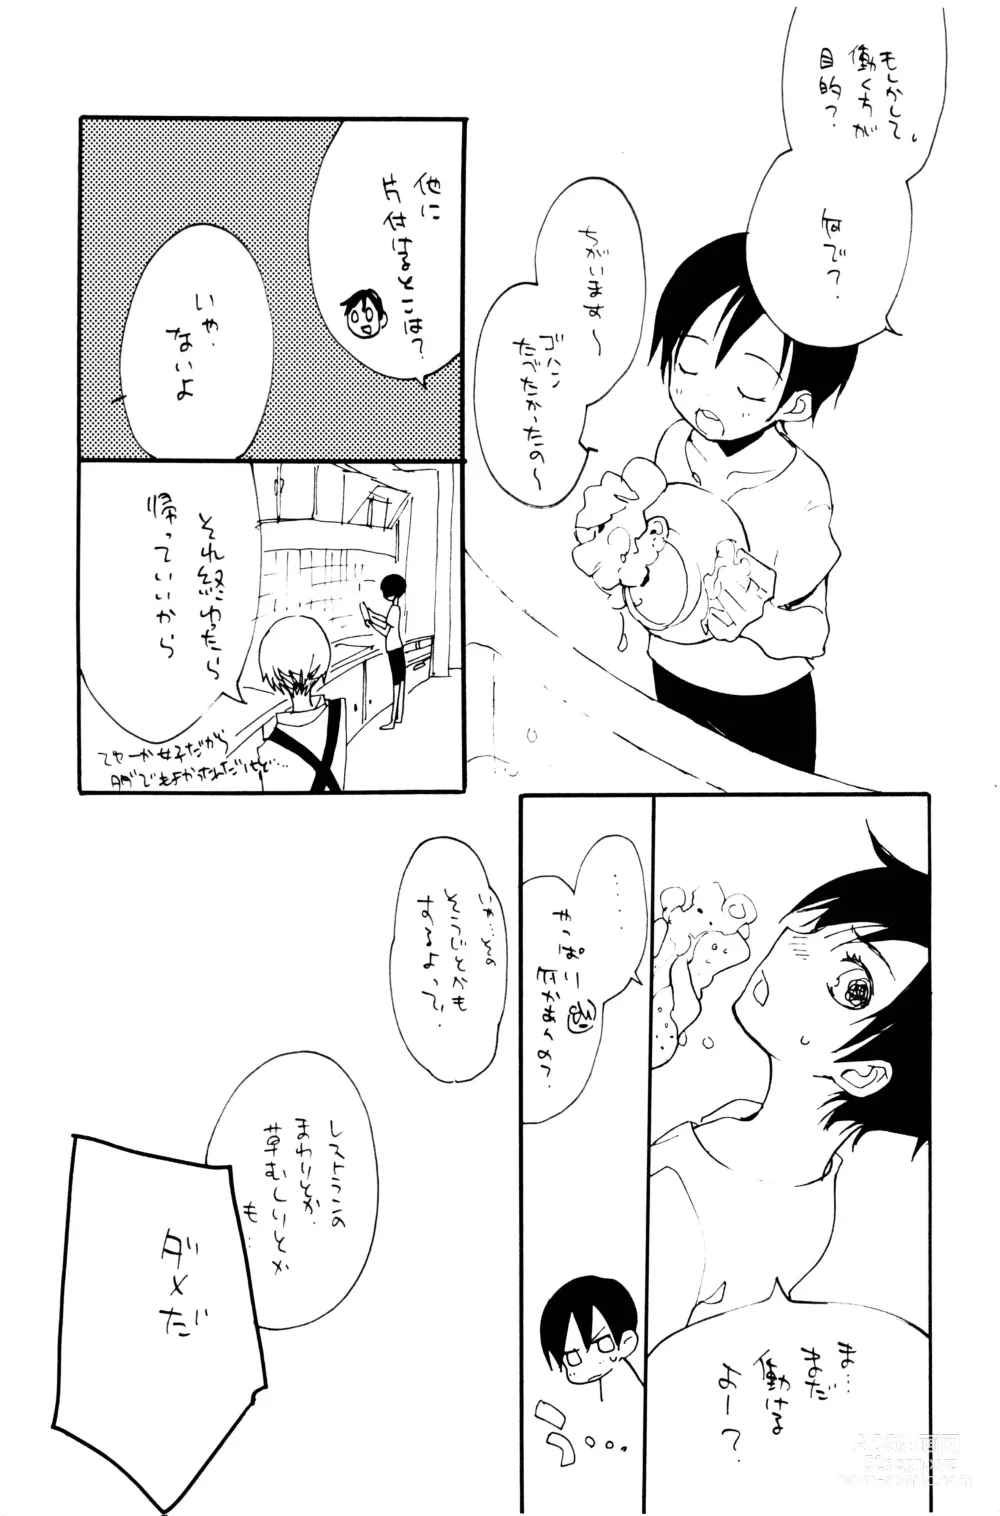 Page 12 of doujinshi 0-do kara Machibito Kitaru